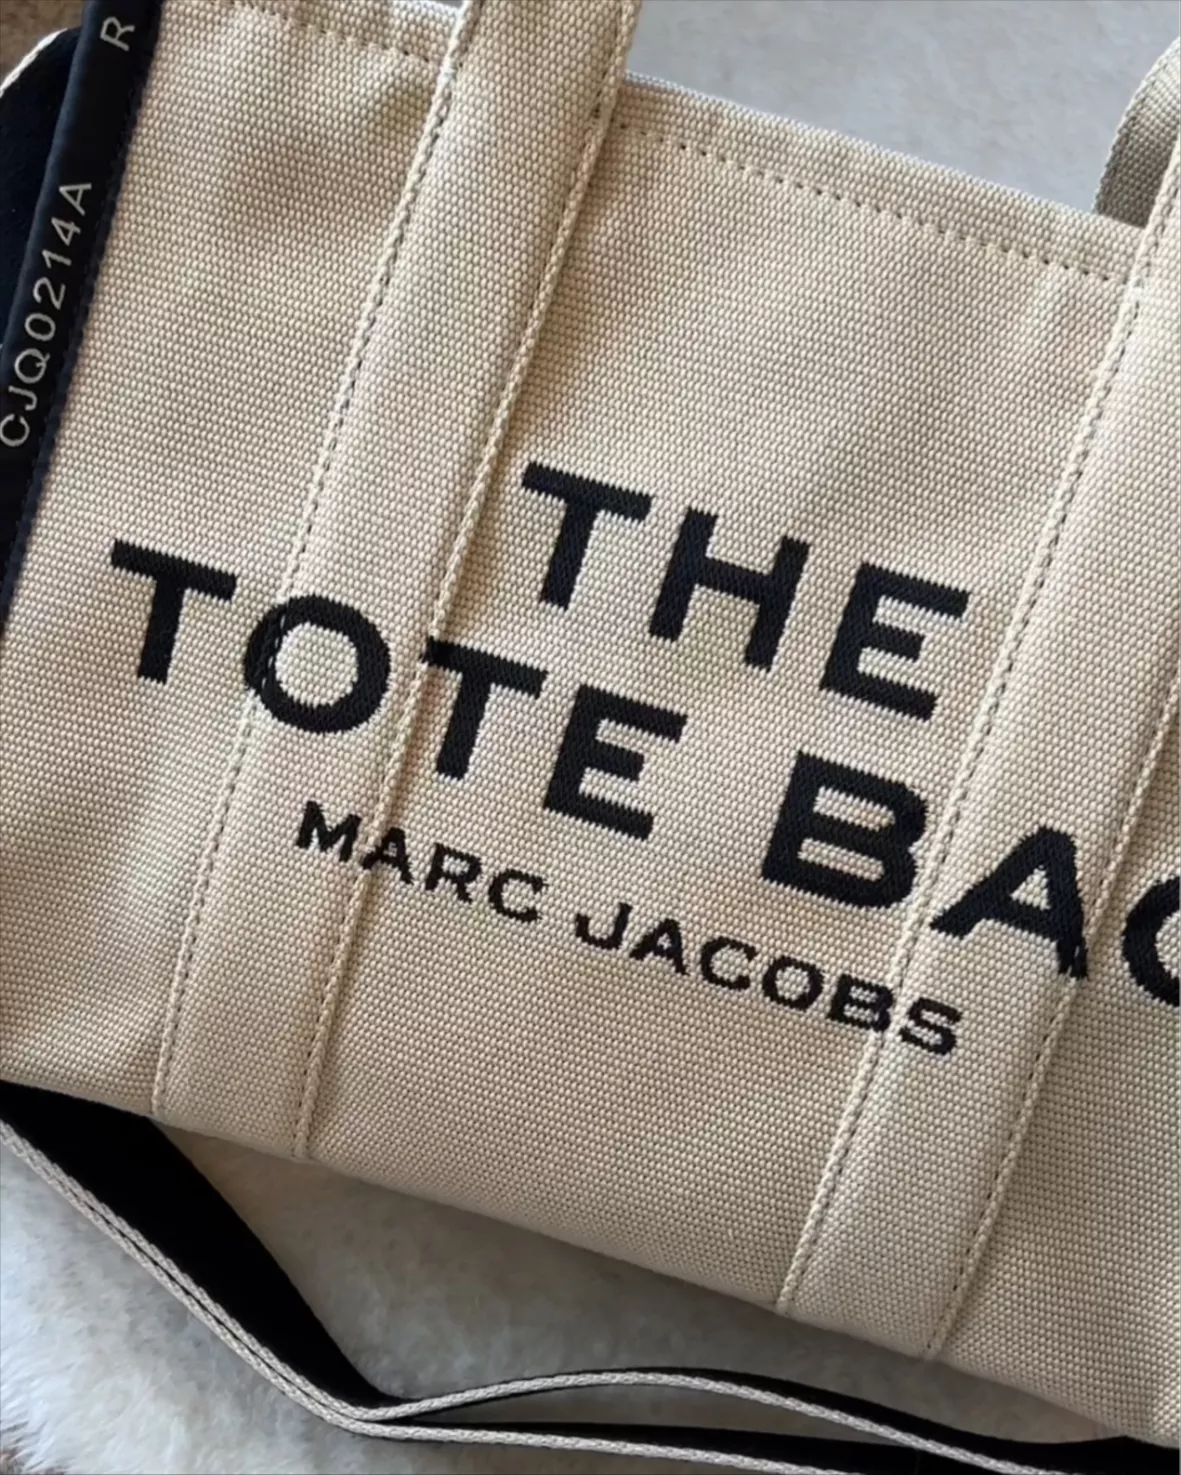 fake marc jacobs bag vs real